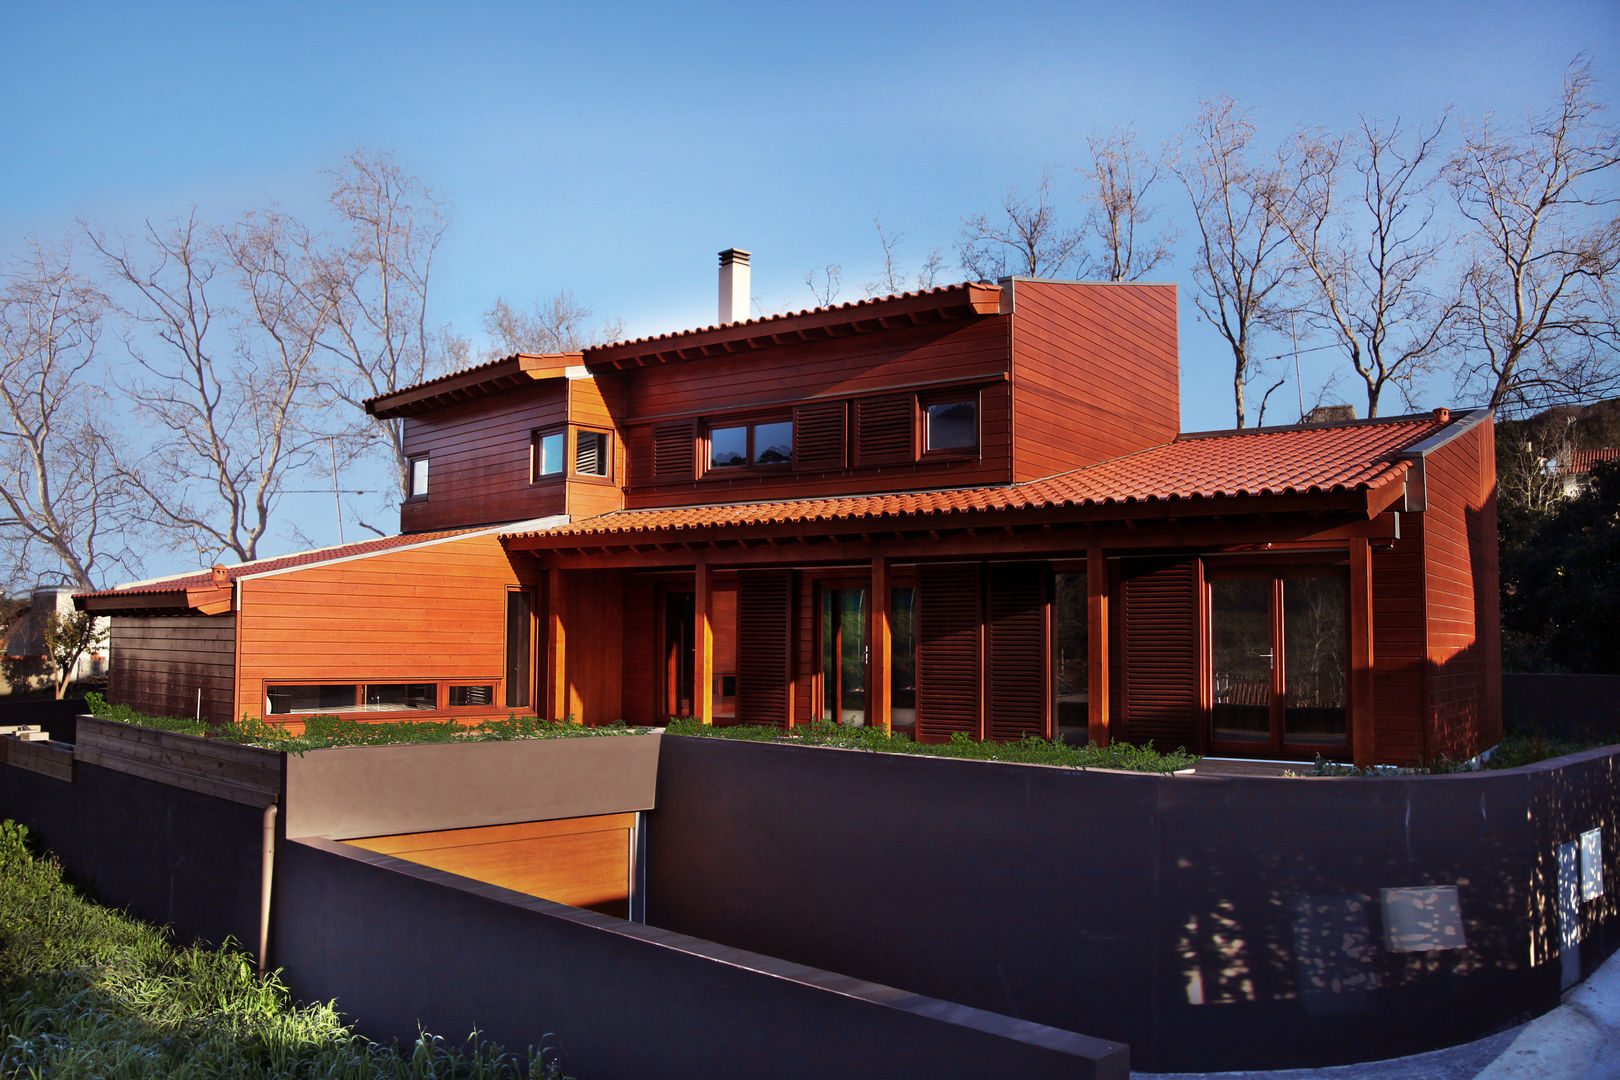 RUSTICASA | 100 projetos | Portugal + Espanha, RUSTICASA RUSTICASA Chalés e casas de madeira Madeira Efeito de madeira